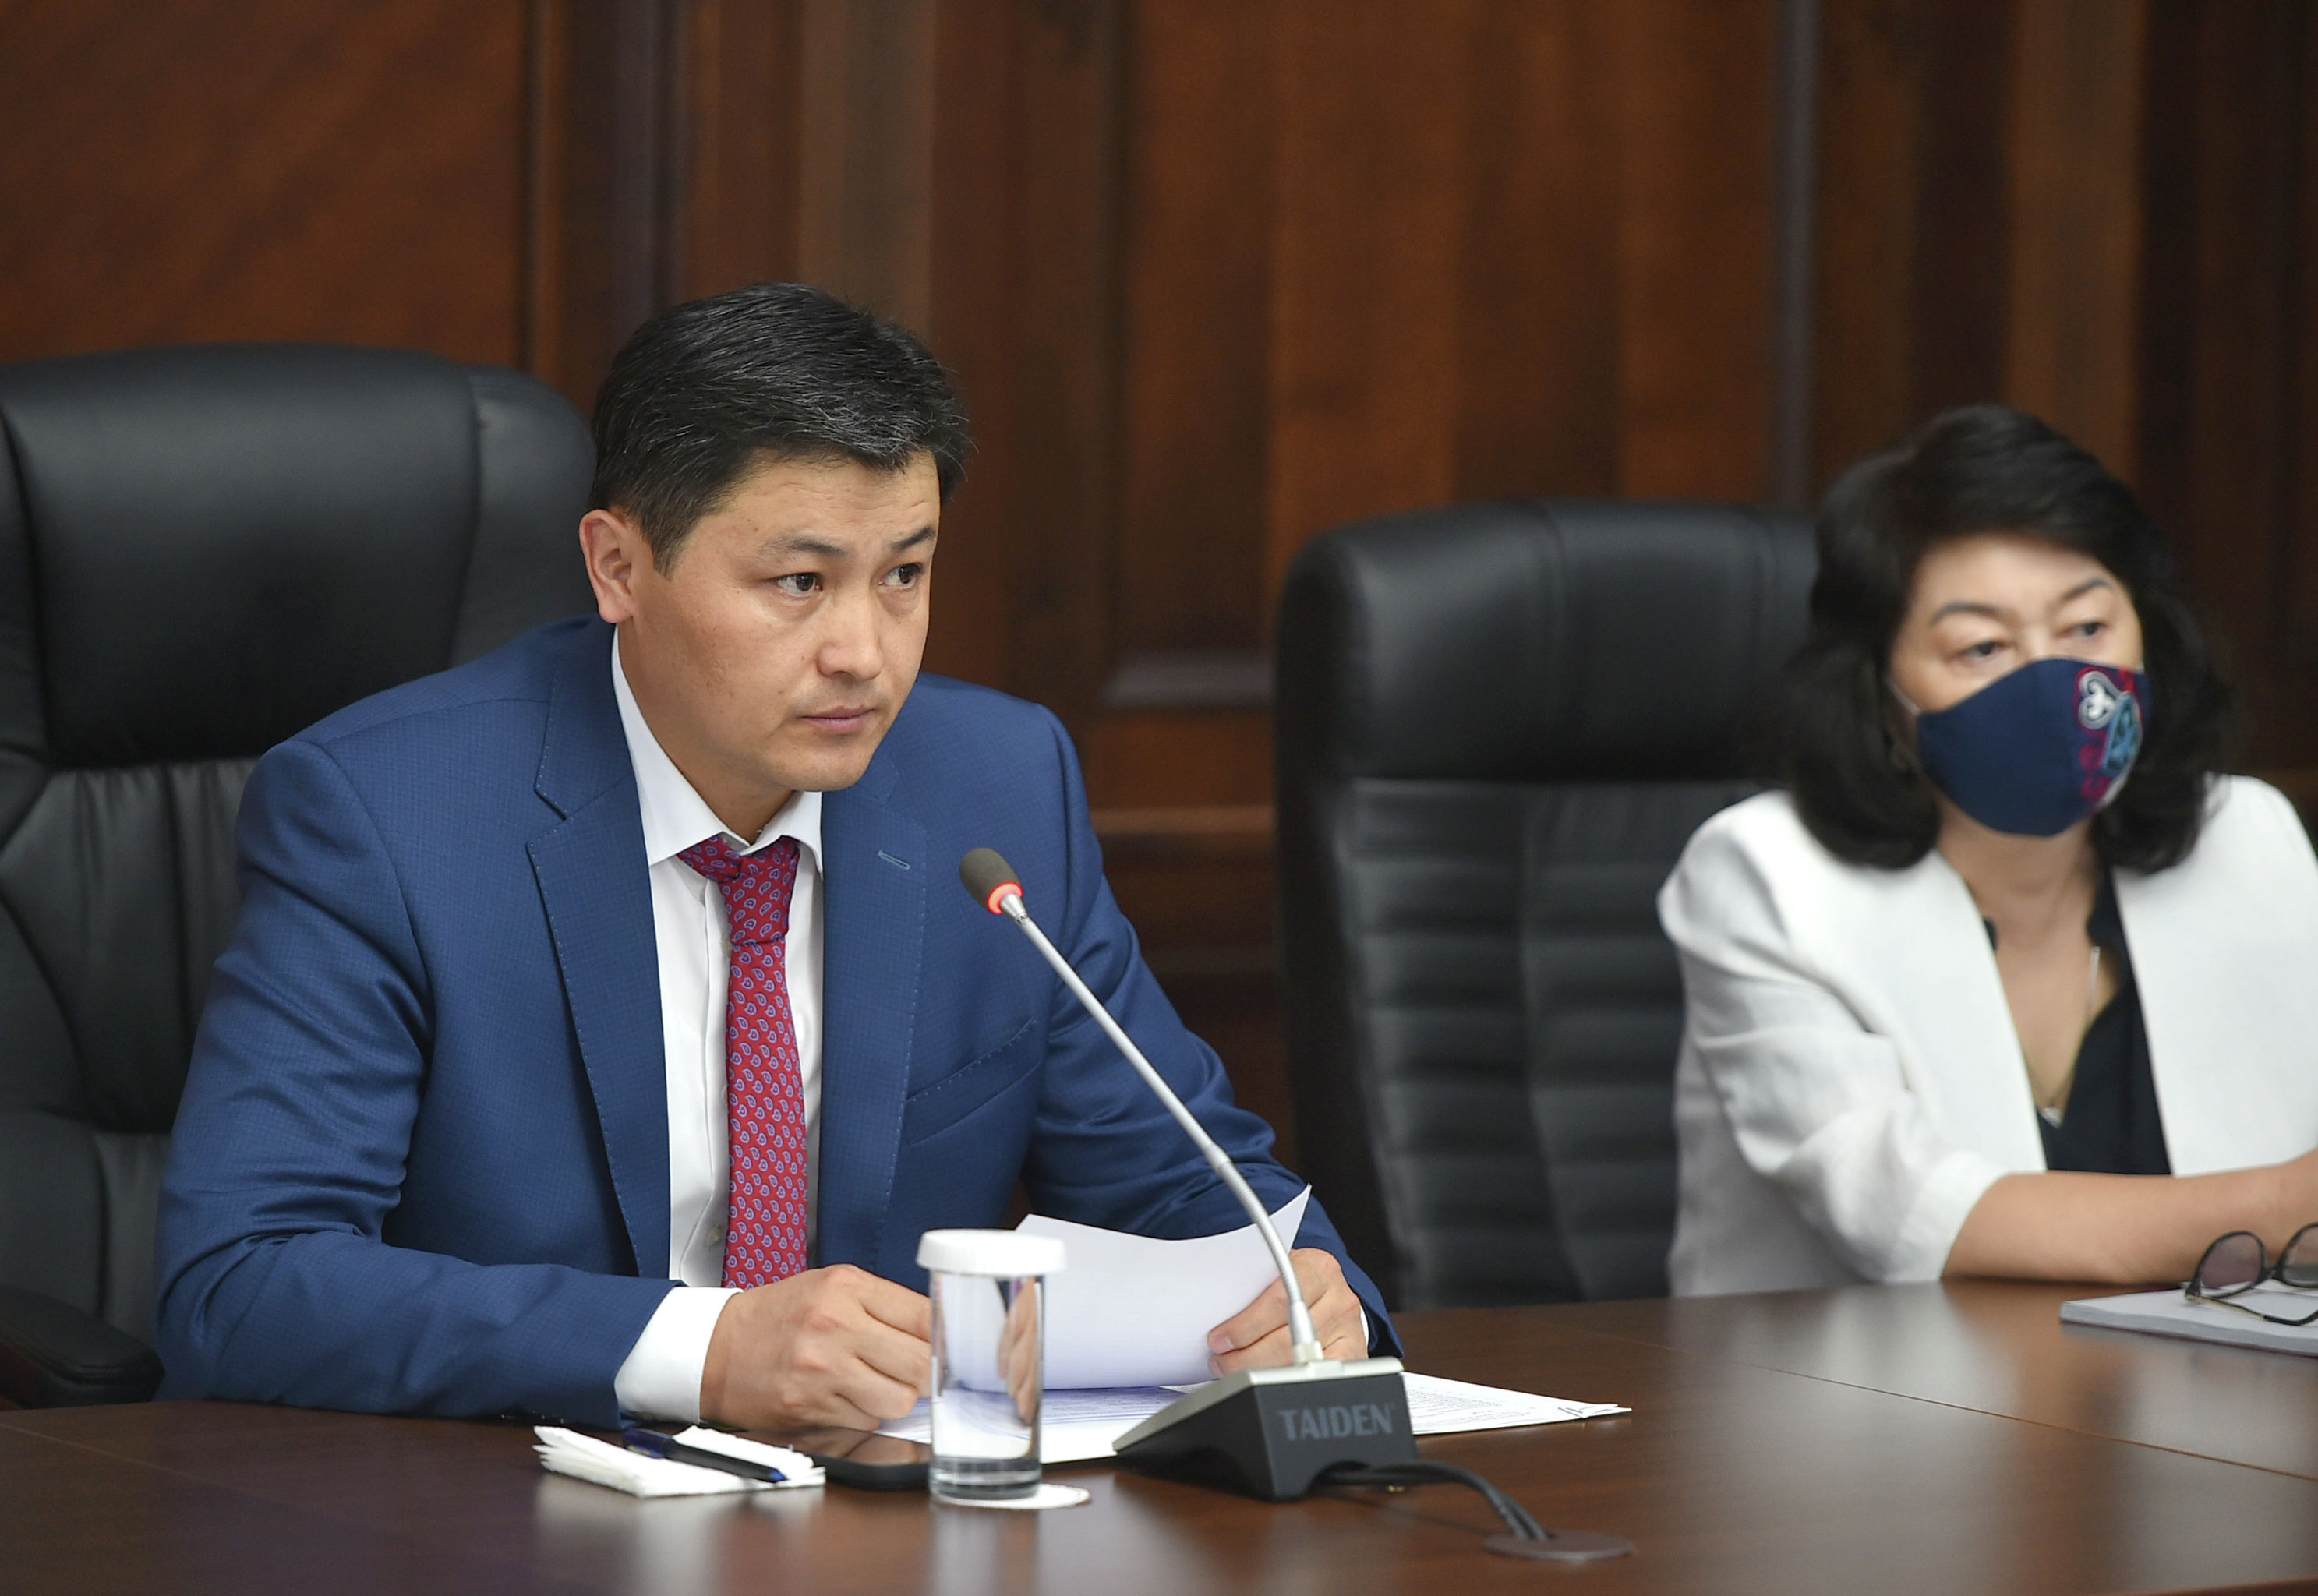 Председатель кабинета министров Улукбек Марипов заявил в ходе заседания организационного комитета по проведению юбилейной даты. 04 августа 2021 года